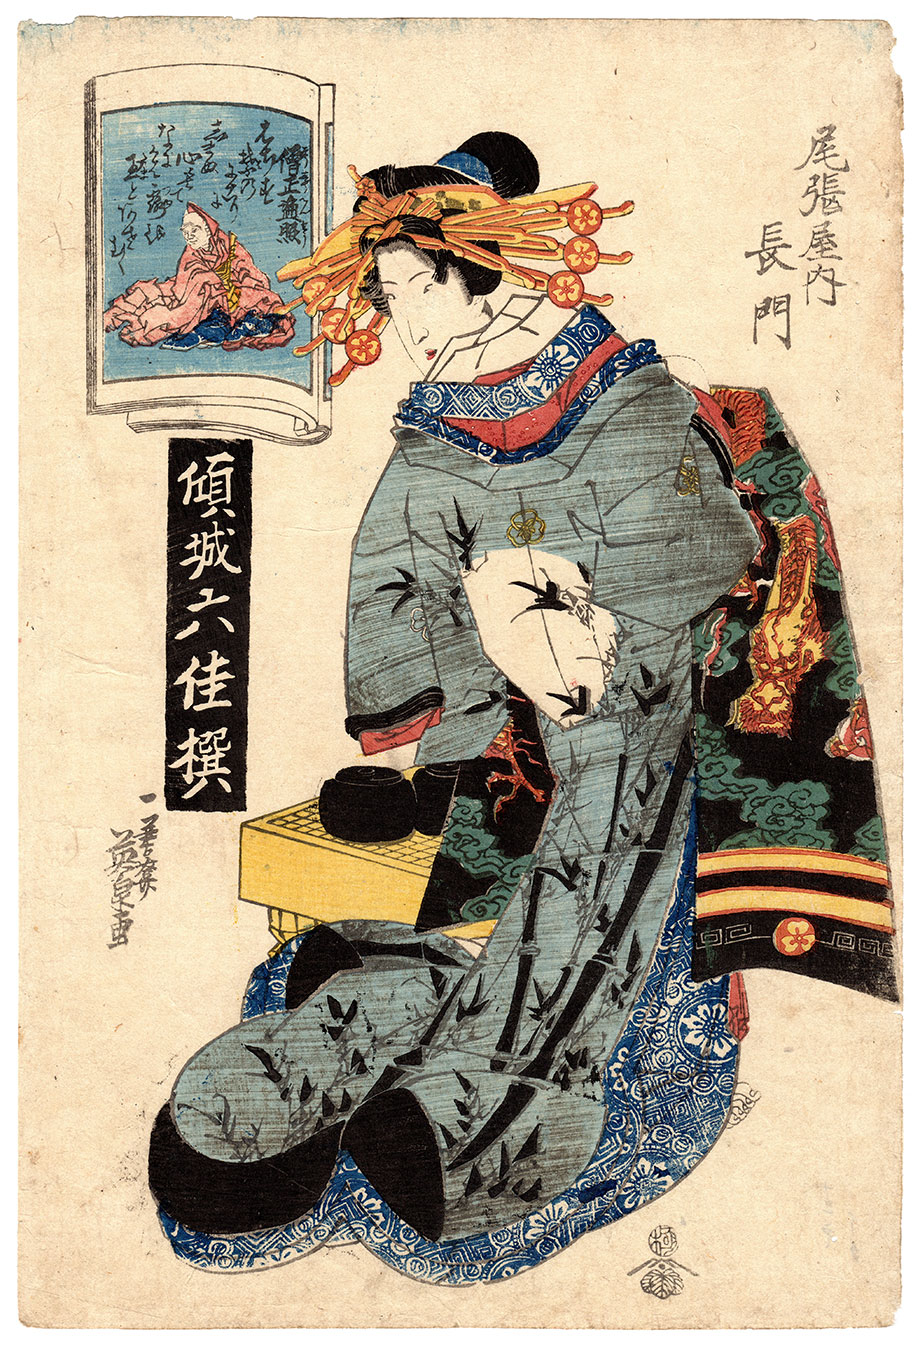 THE LOTUS (Keisai Eisen) – 美和 Miwa Japanese Art